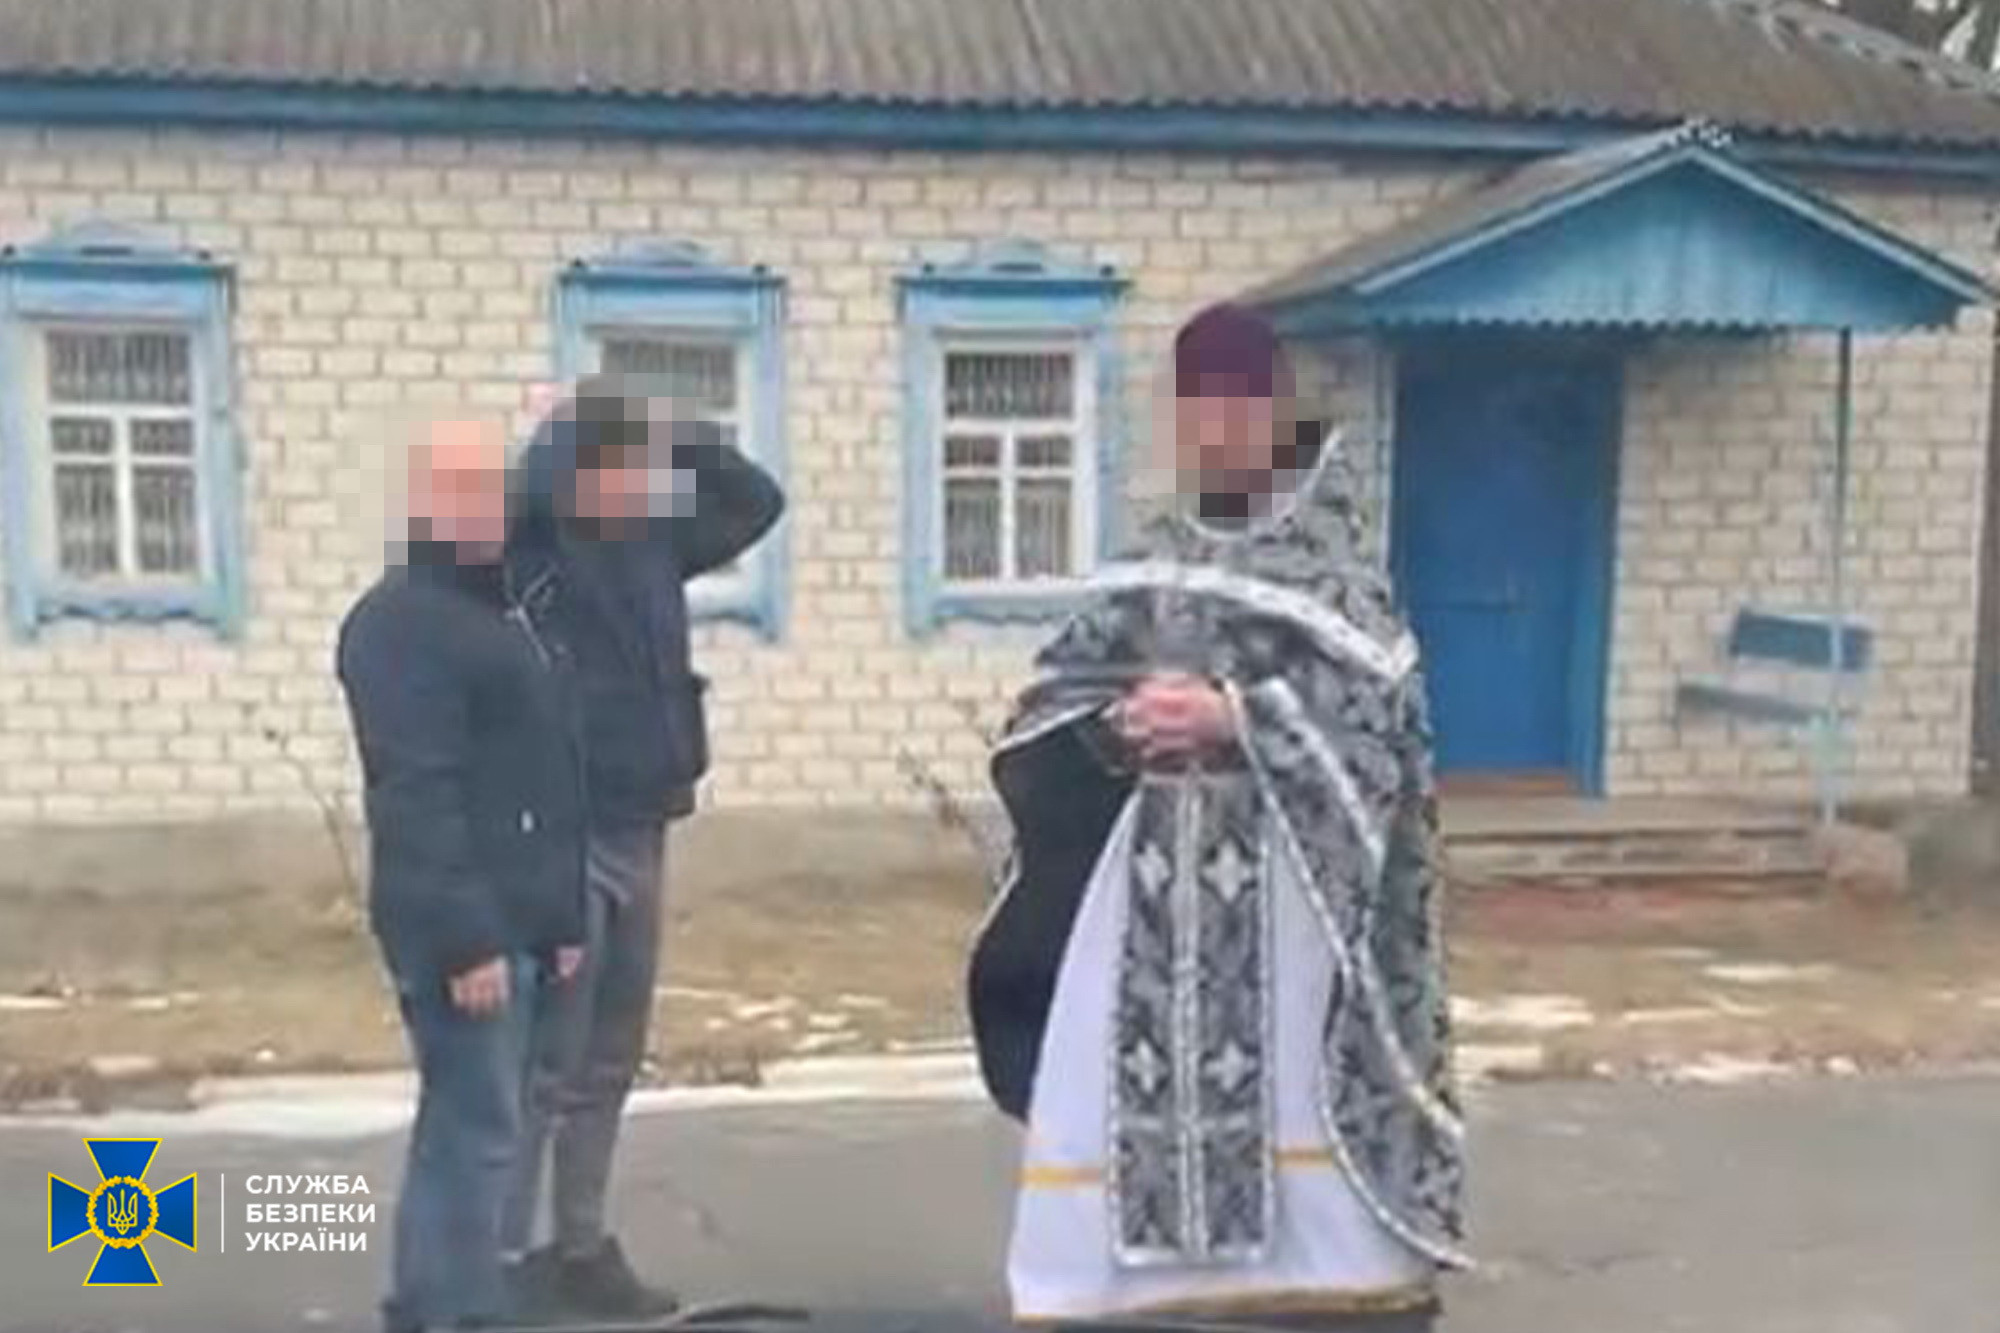 СБУ: на Сумщине настоятеля храма УПЦ подозревают в сборе разведданных для ФСБ - 1 - изображение